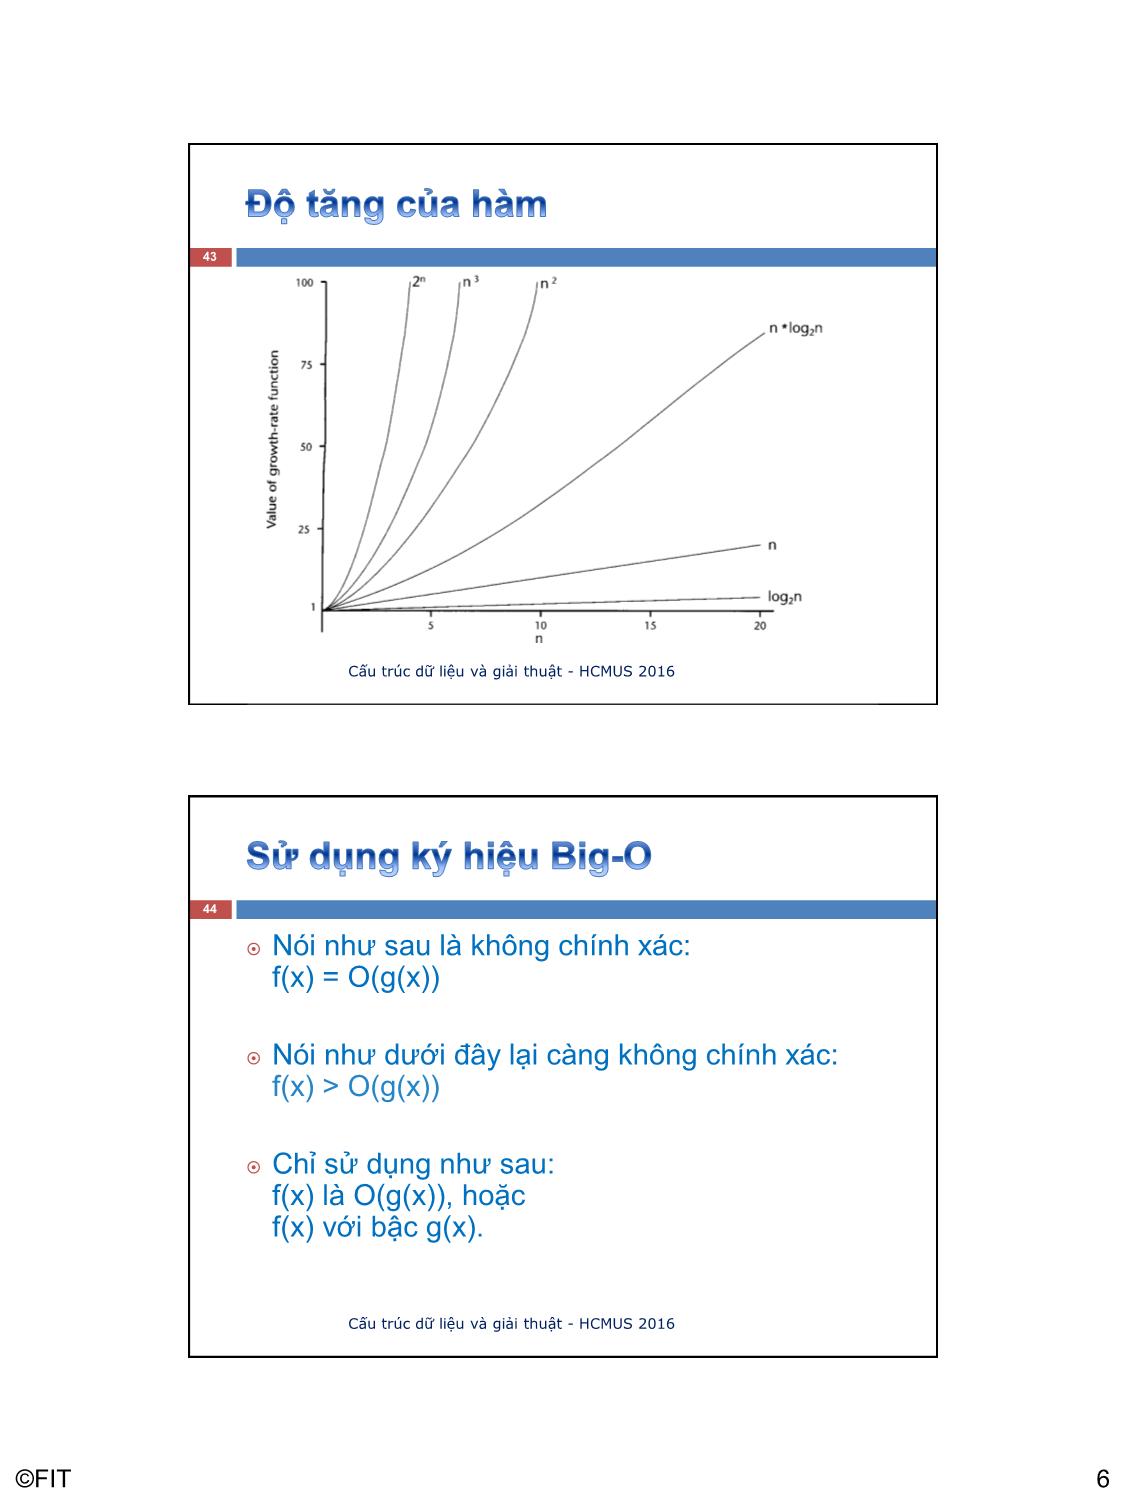 Bài giảng Cấu trúc dữ liệu và giải thuật - Bài: Độ tăng của hàm - Văn Chí Nam trang 6